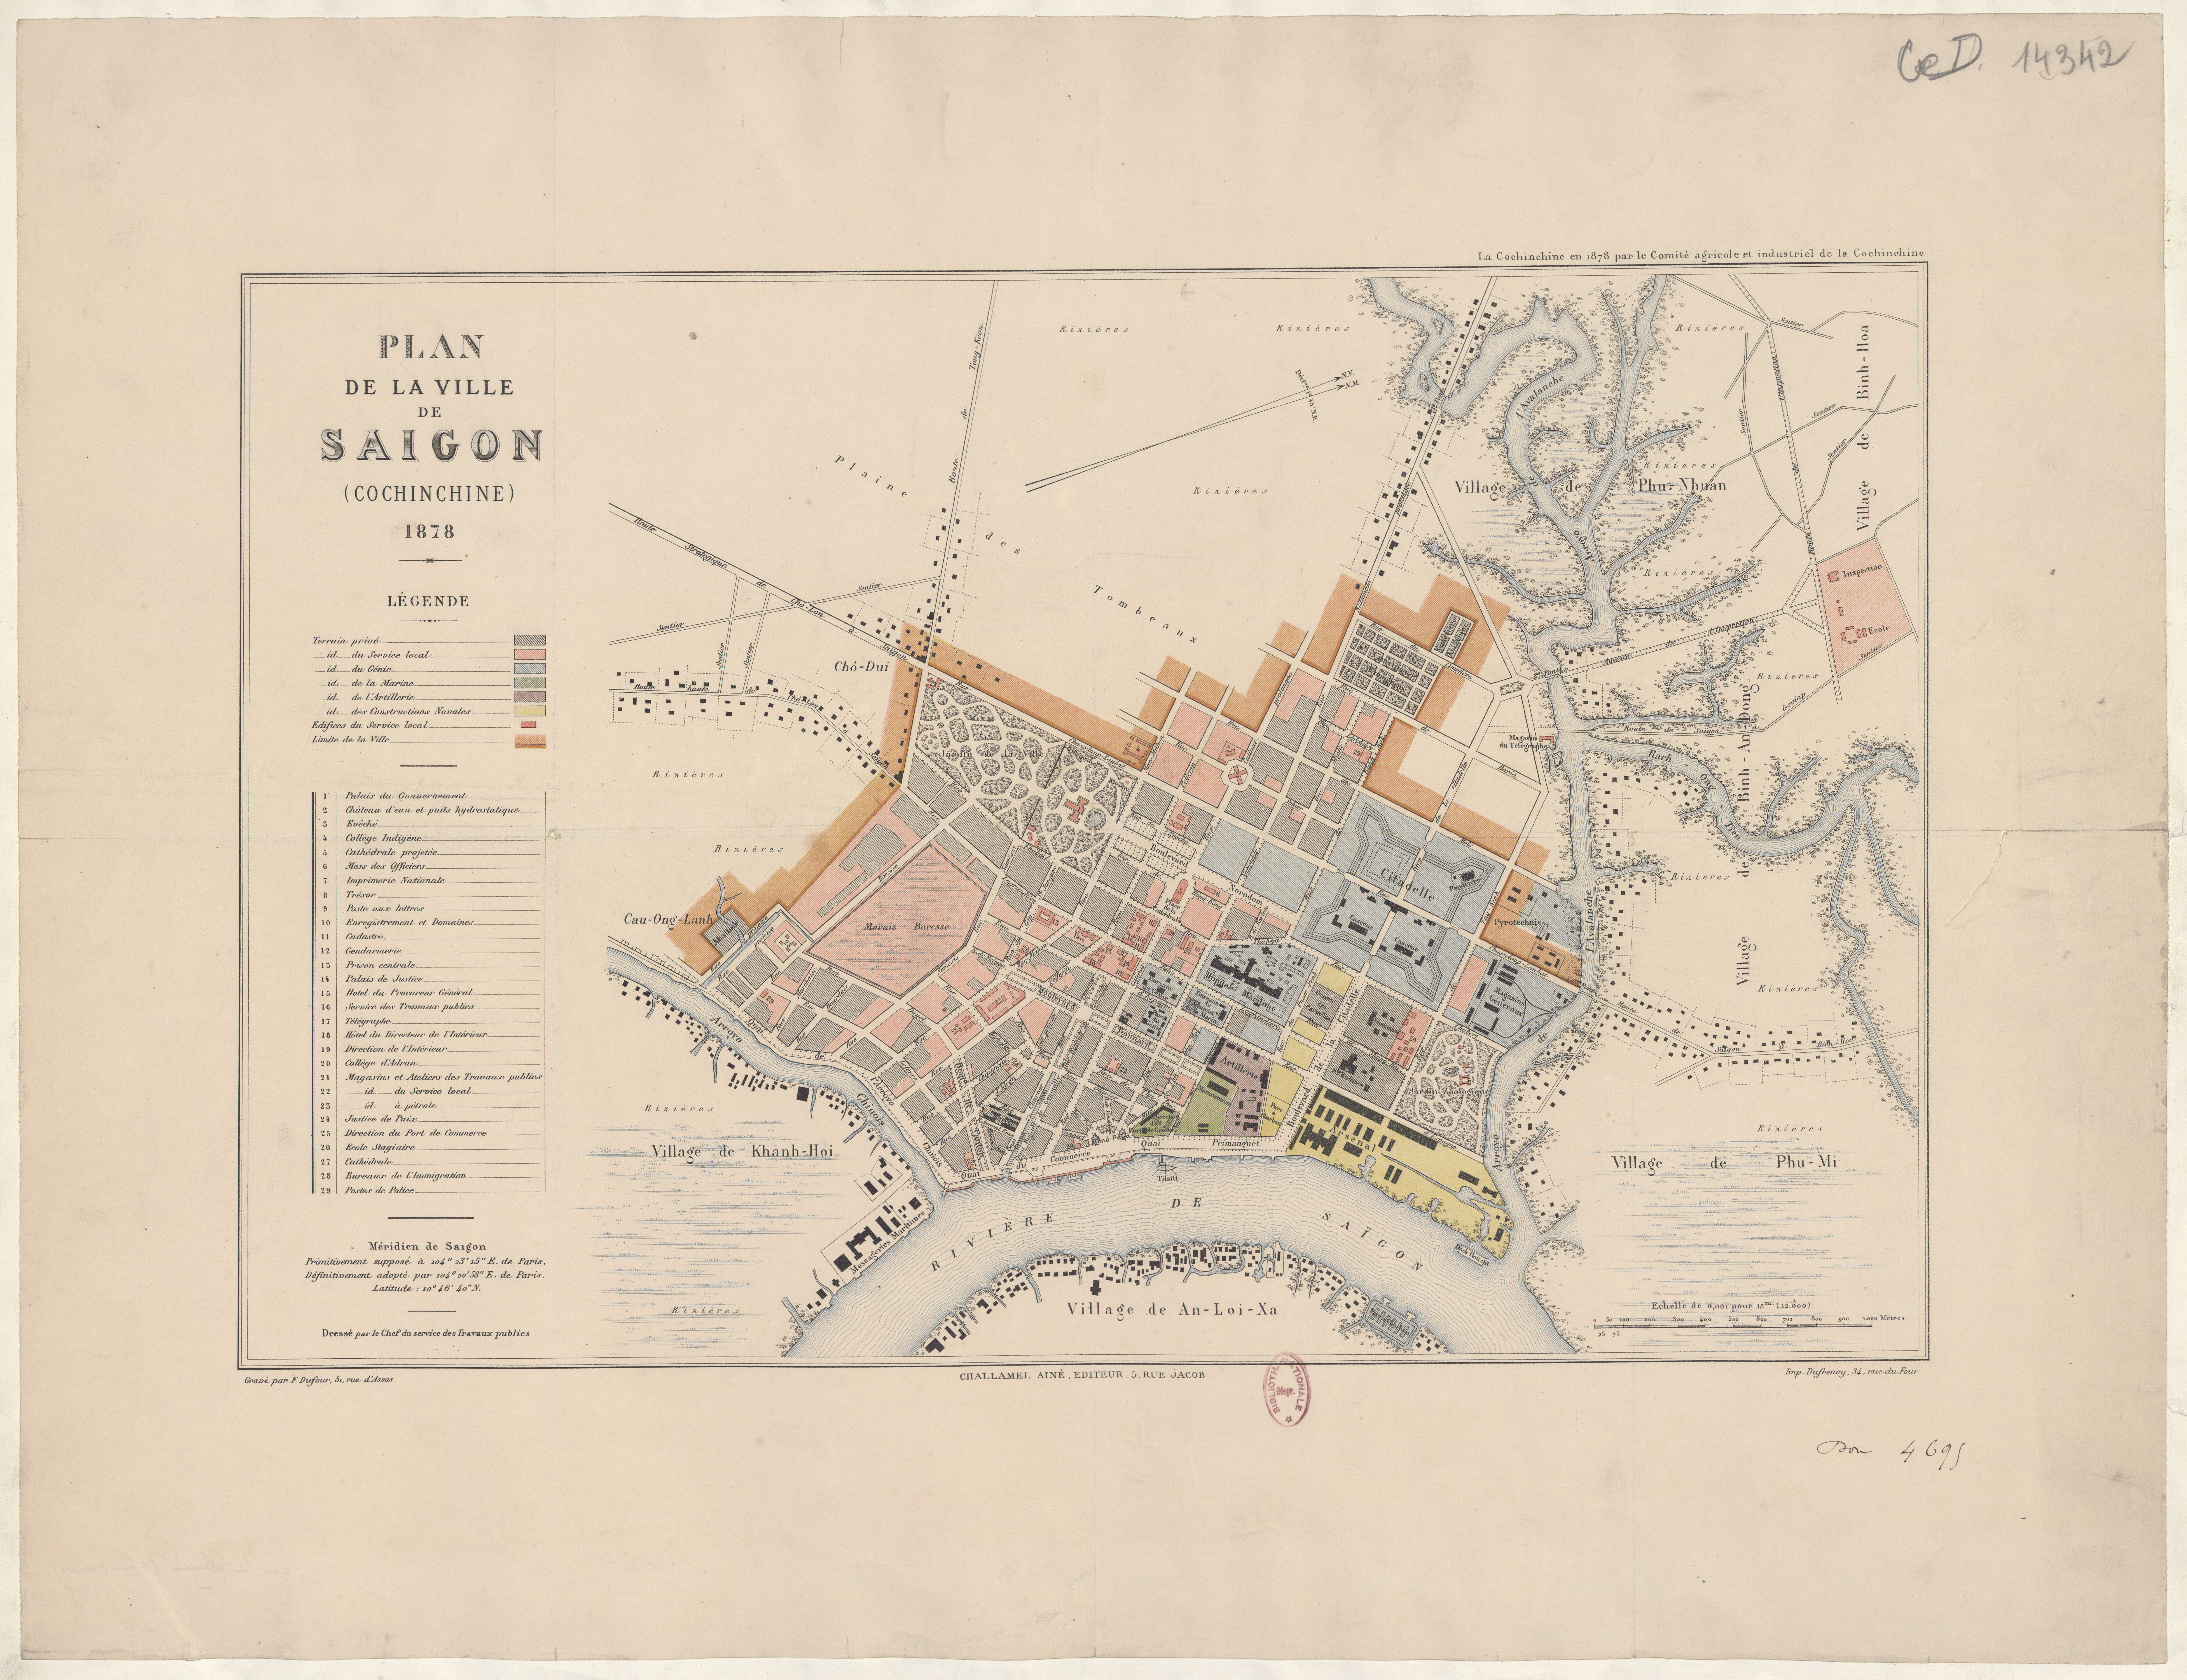 Map_of_Saigon_1878.jpg